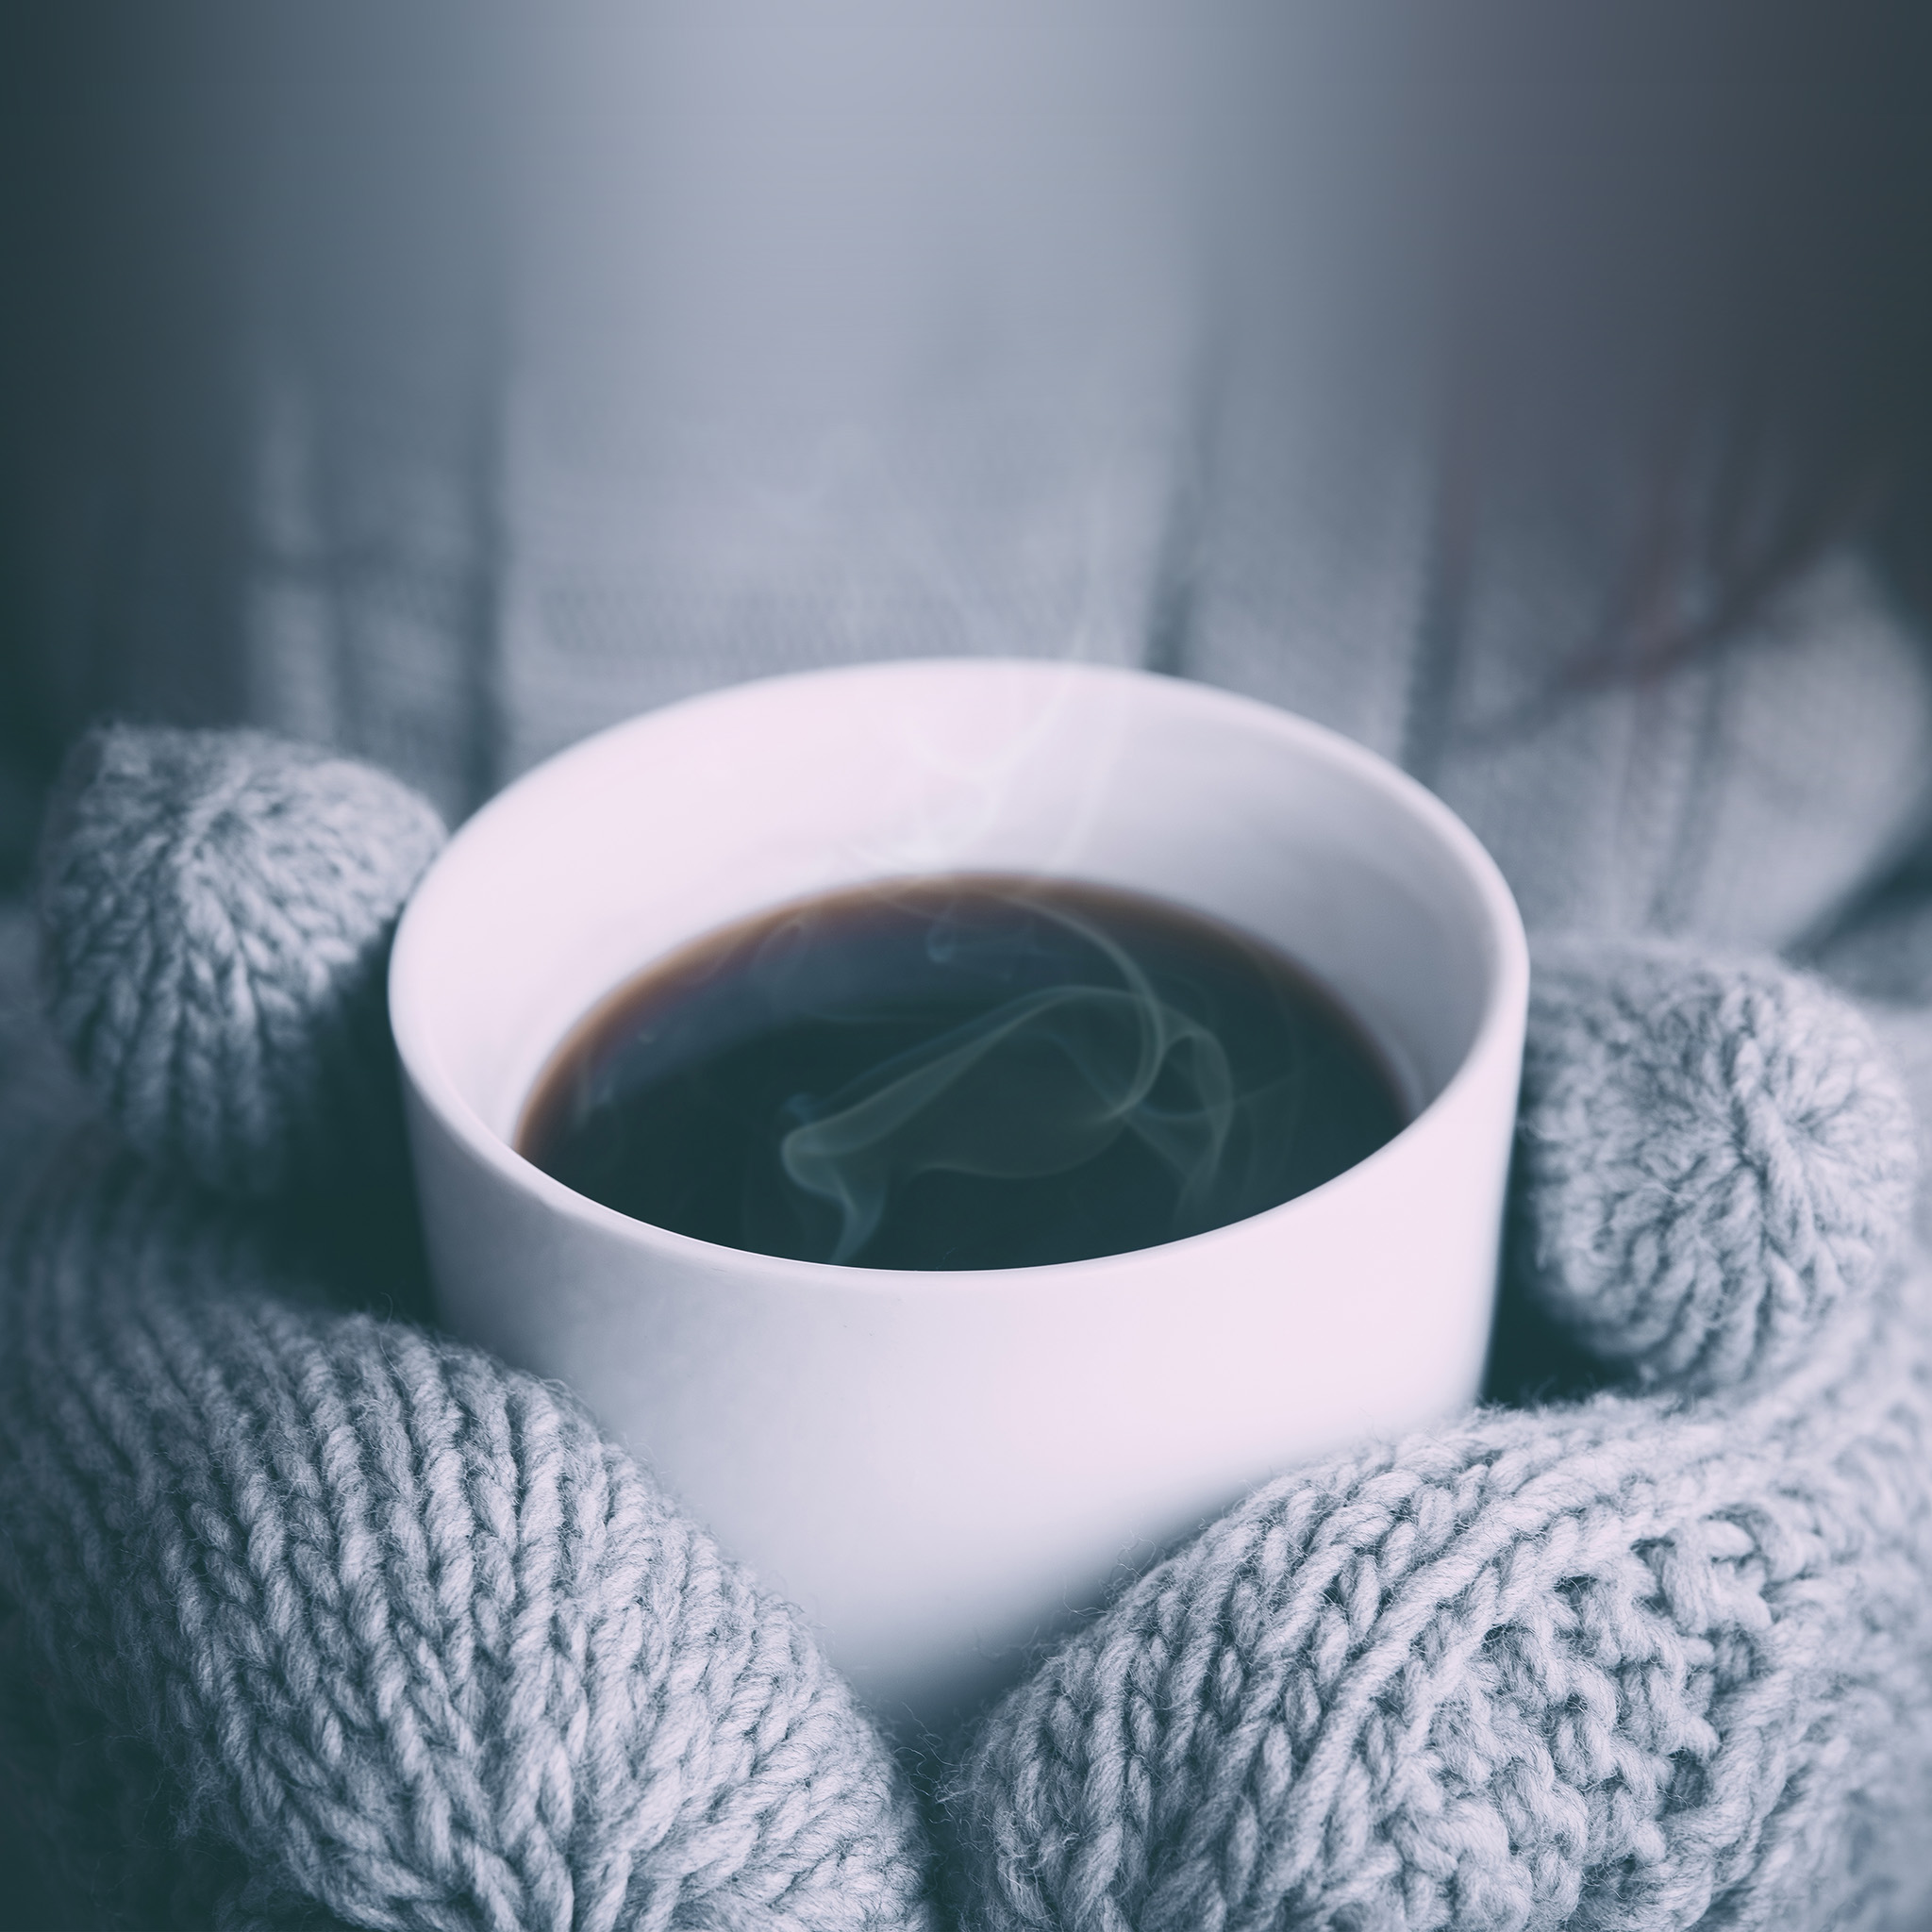 Hot Coffee Winter - HD Wallpaper 